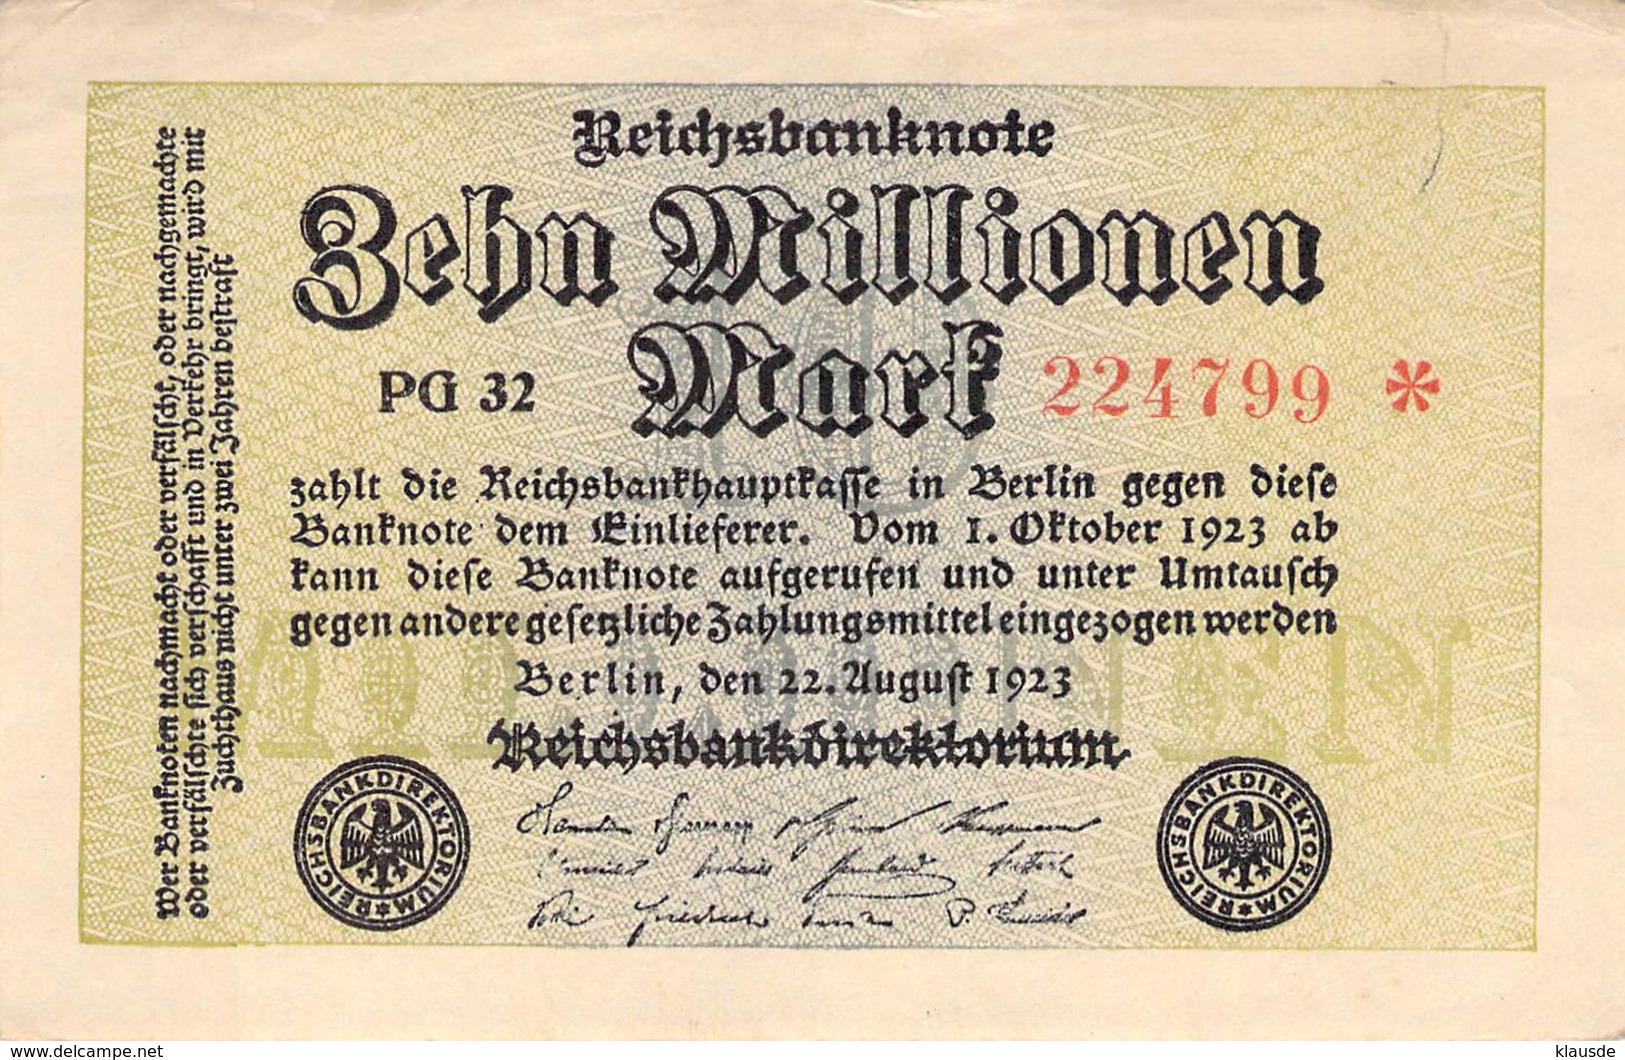 10 Mio Mark Reichsbanknote VF/F (III) PG 32 - 5 Mio. Mark